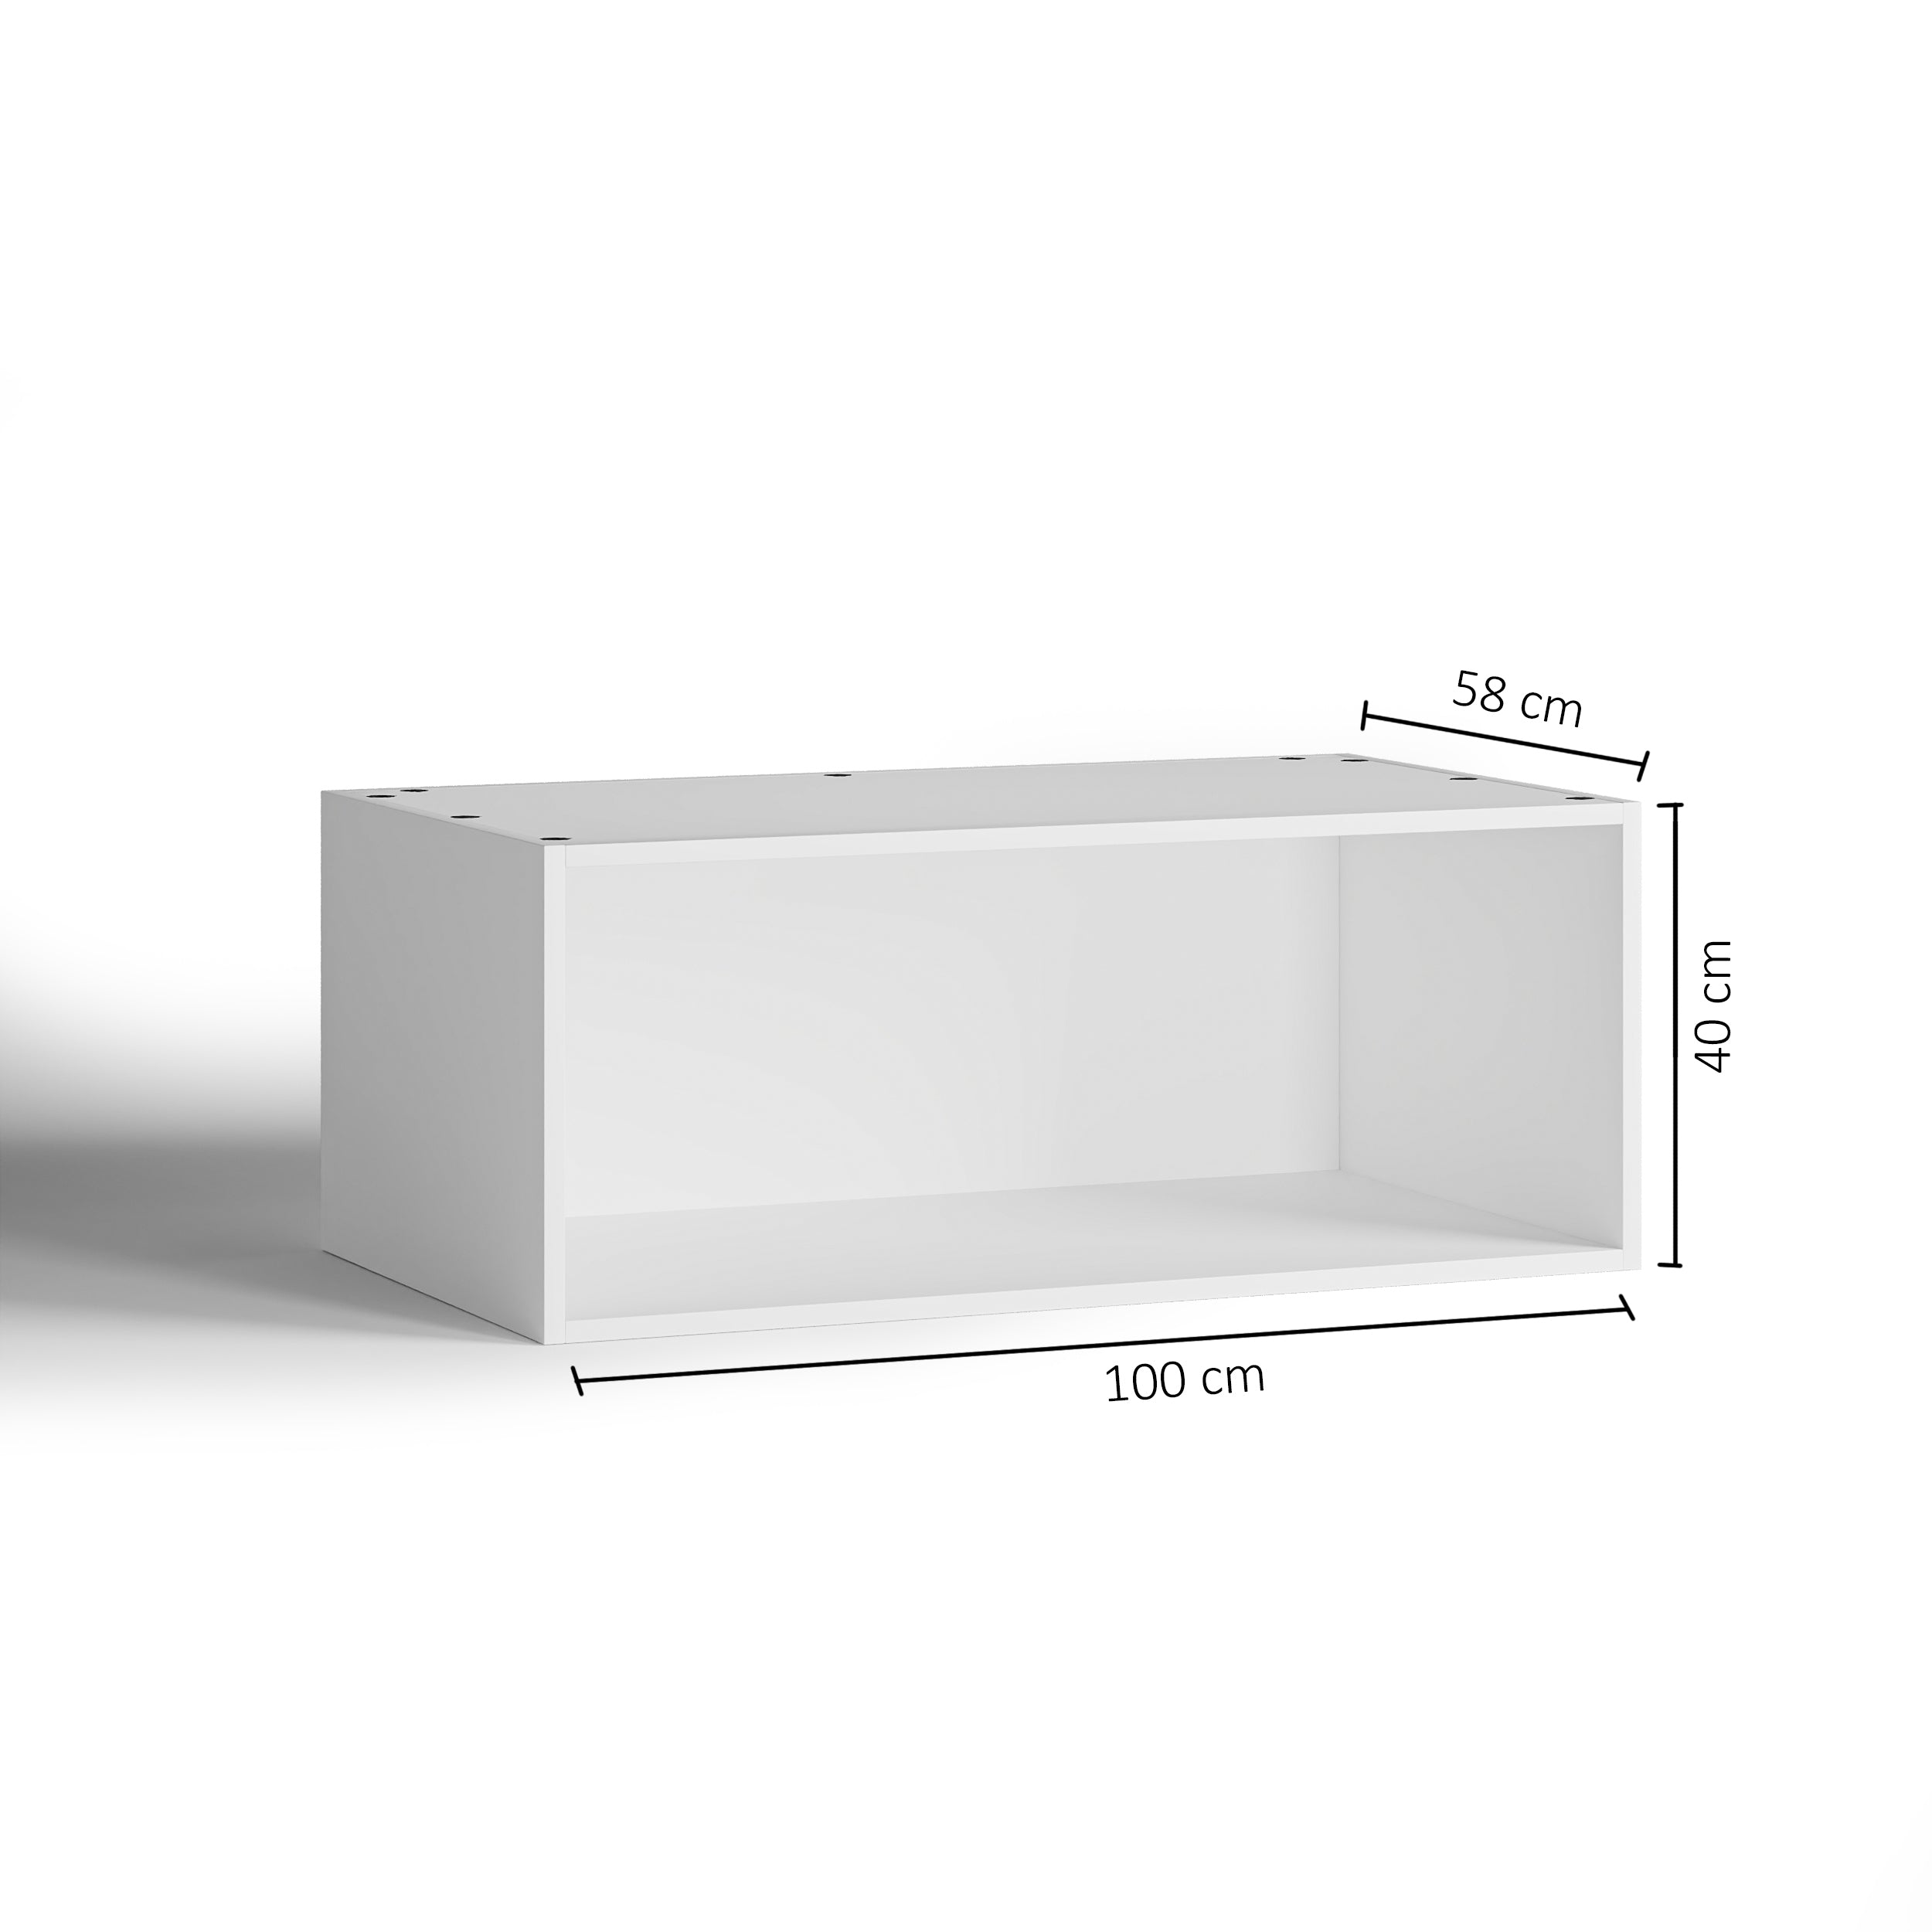 100x40 - Cabinet (58cm D) No Doors - PAX